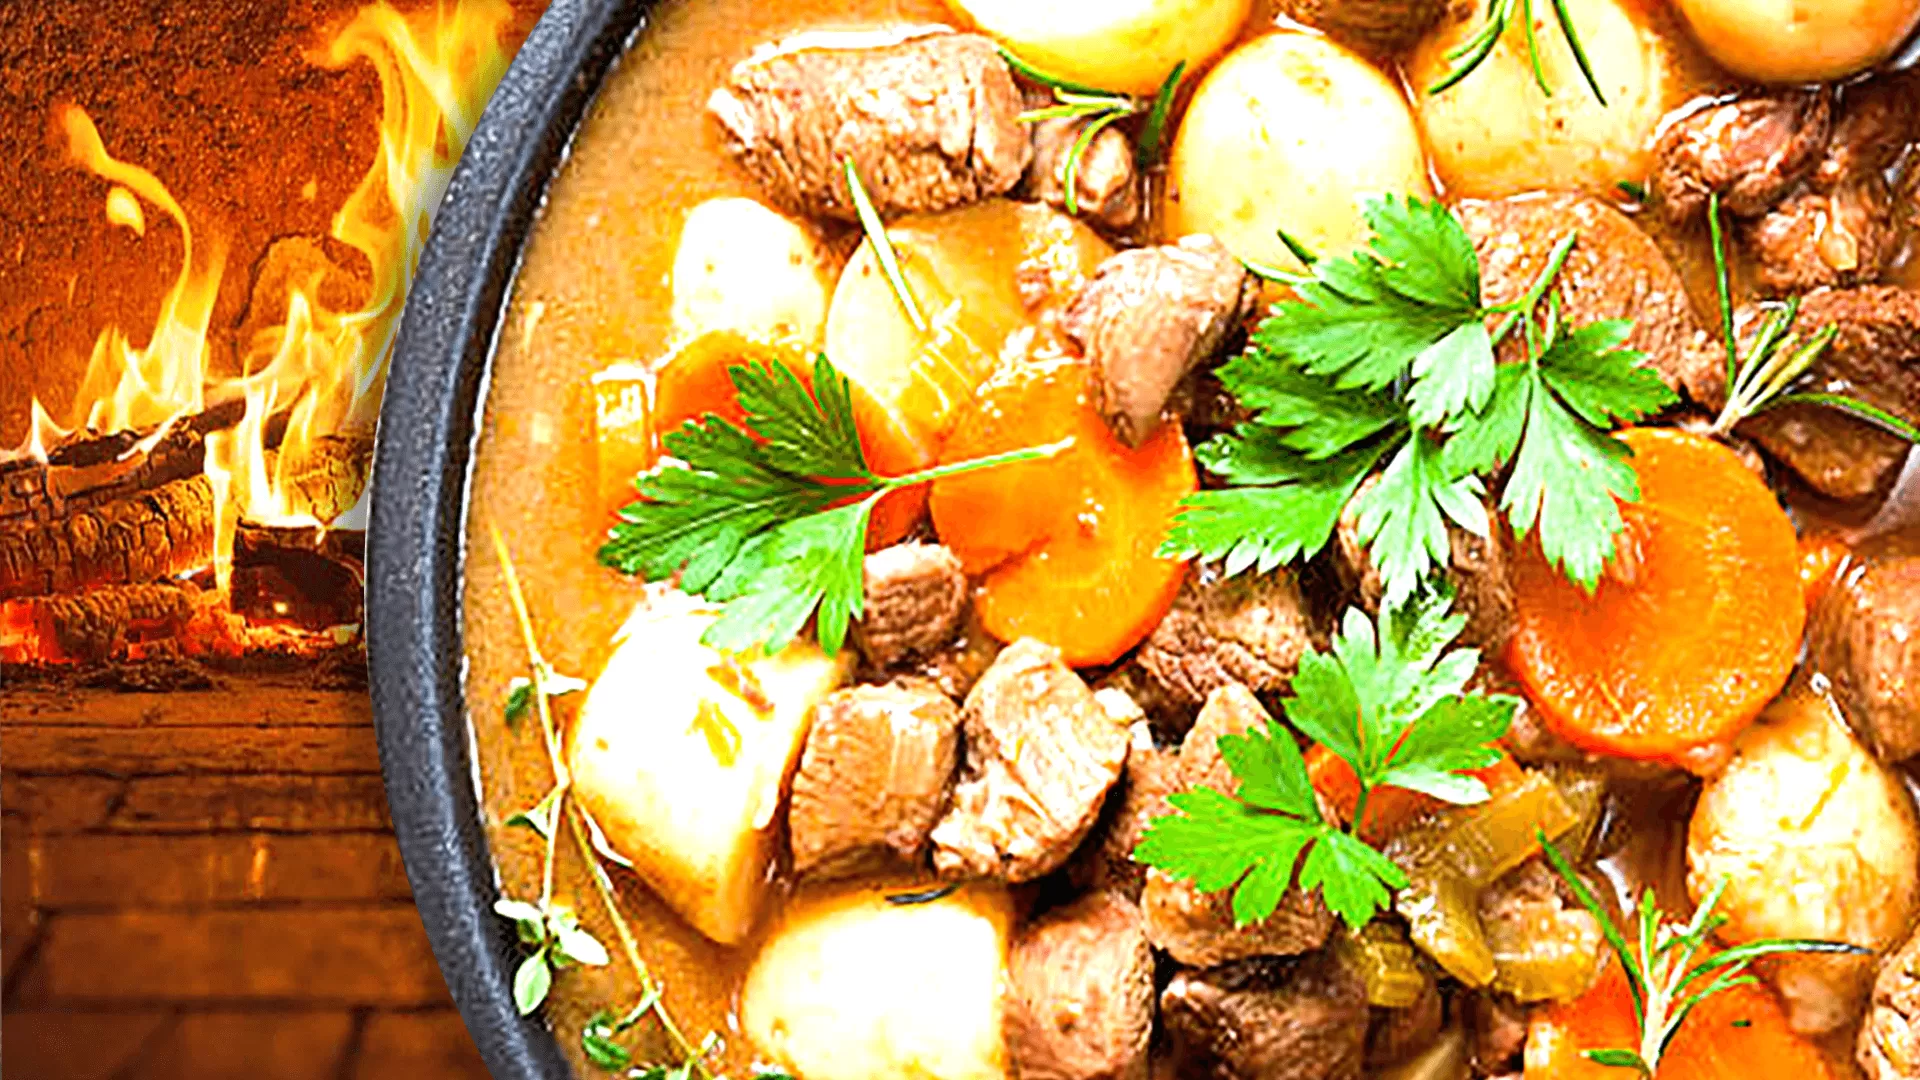 Southern Irish Stew